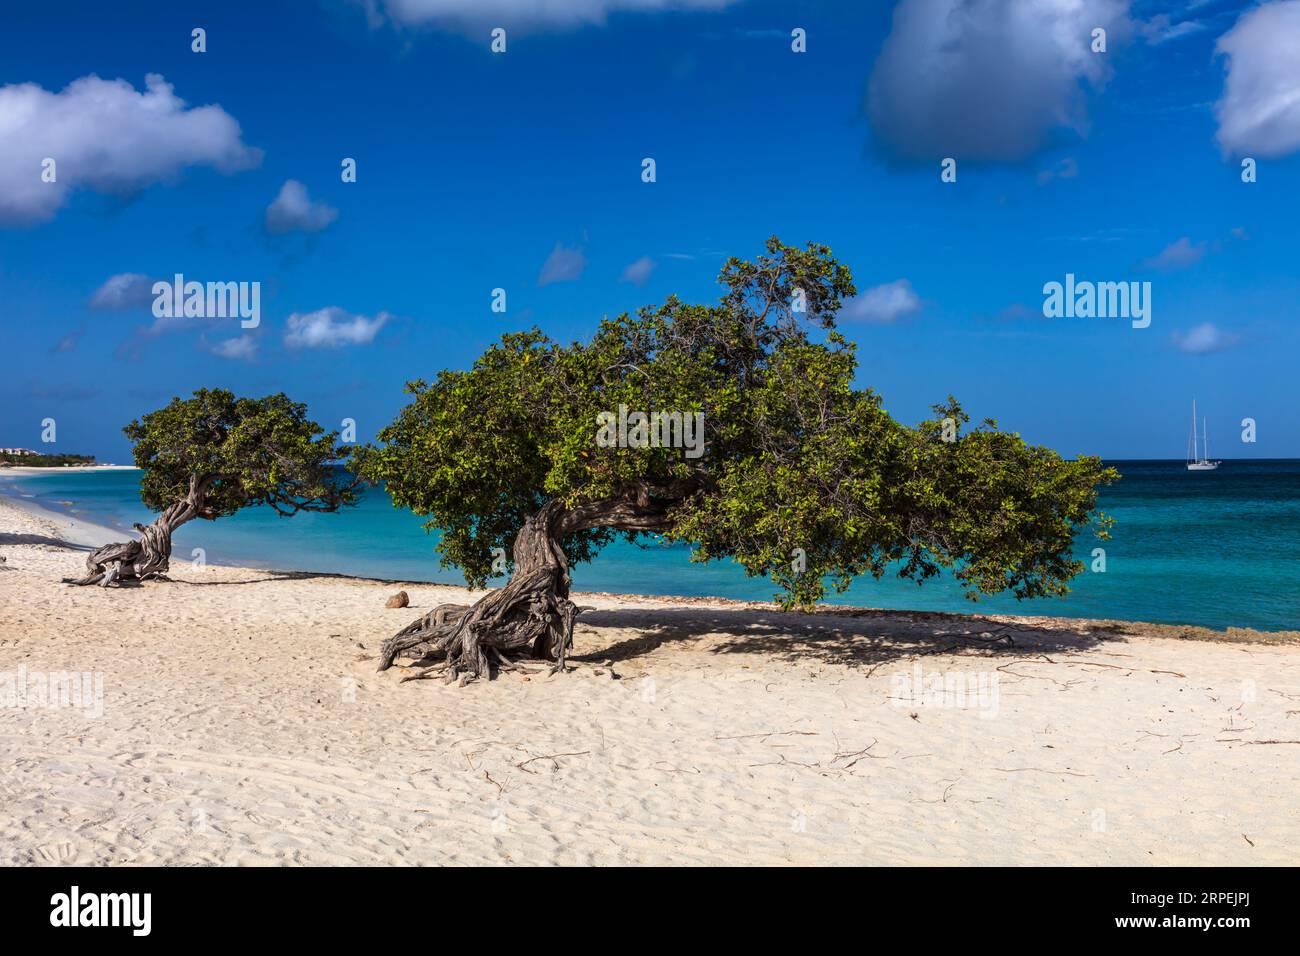 Famosi alberi di Fofoti (Conocarpus erectus) sulla spiaggia di Eagle ad Aruba. Blu vivo e verde smeraldo dell'oceano con barca a vela sullo sfondo. Cielo nuvoloso blu. Foto Stock